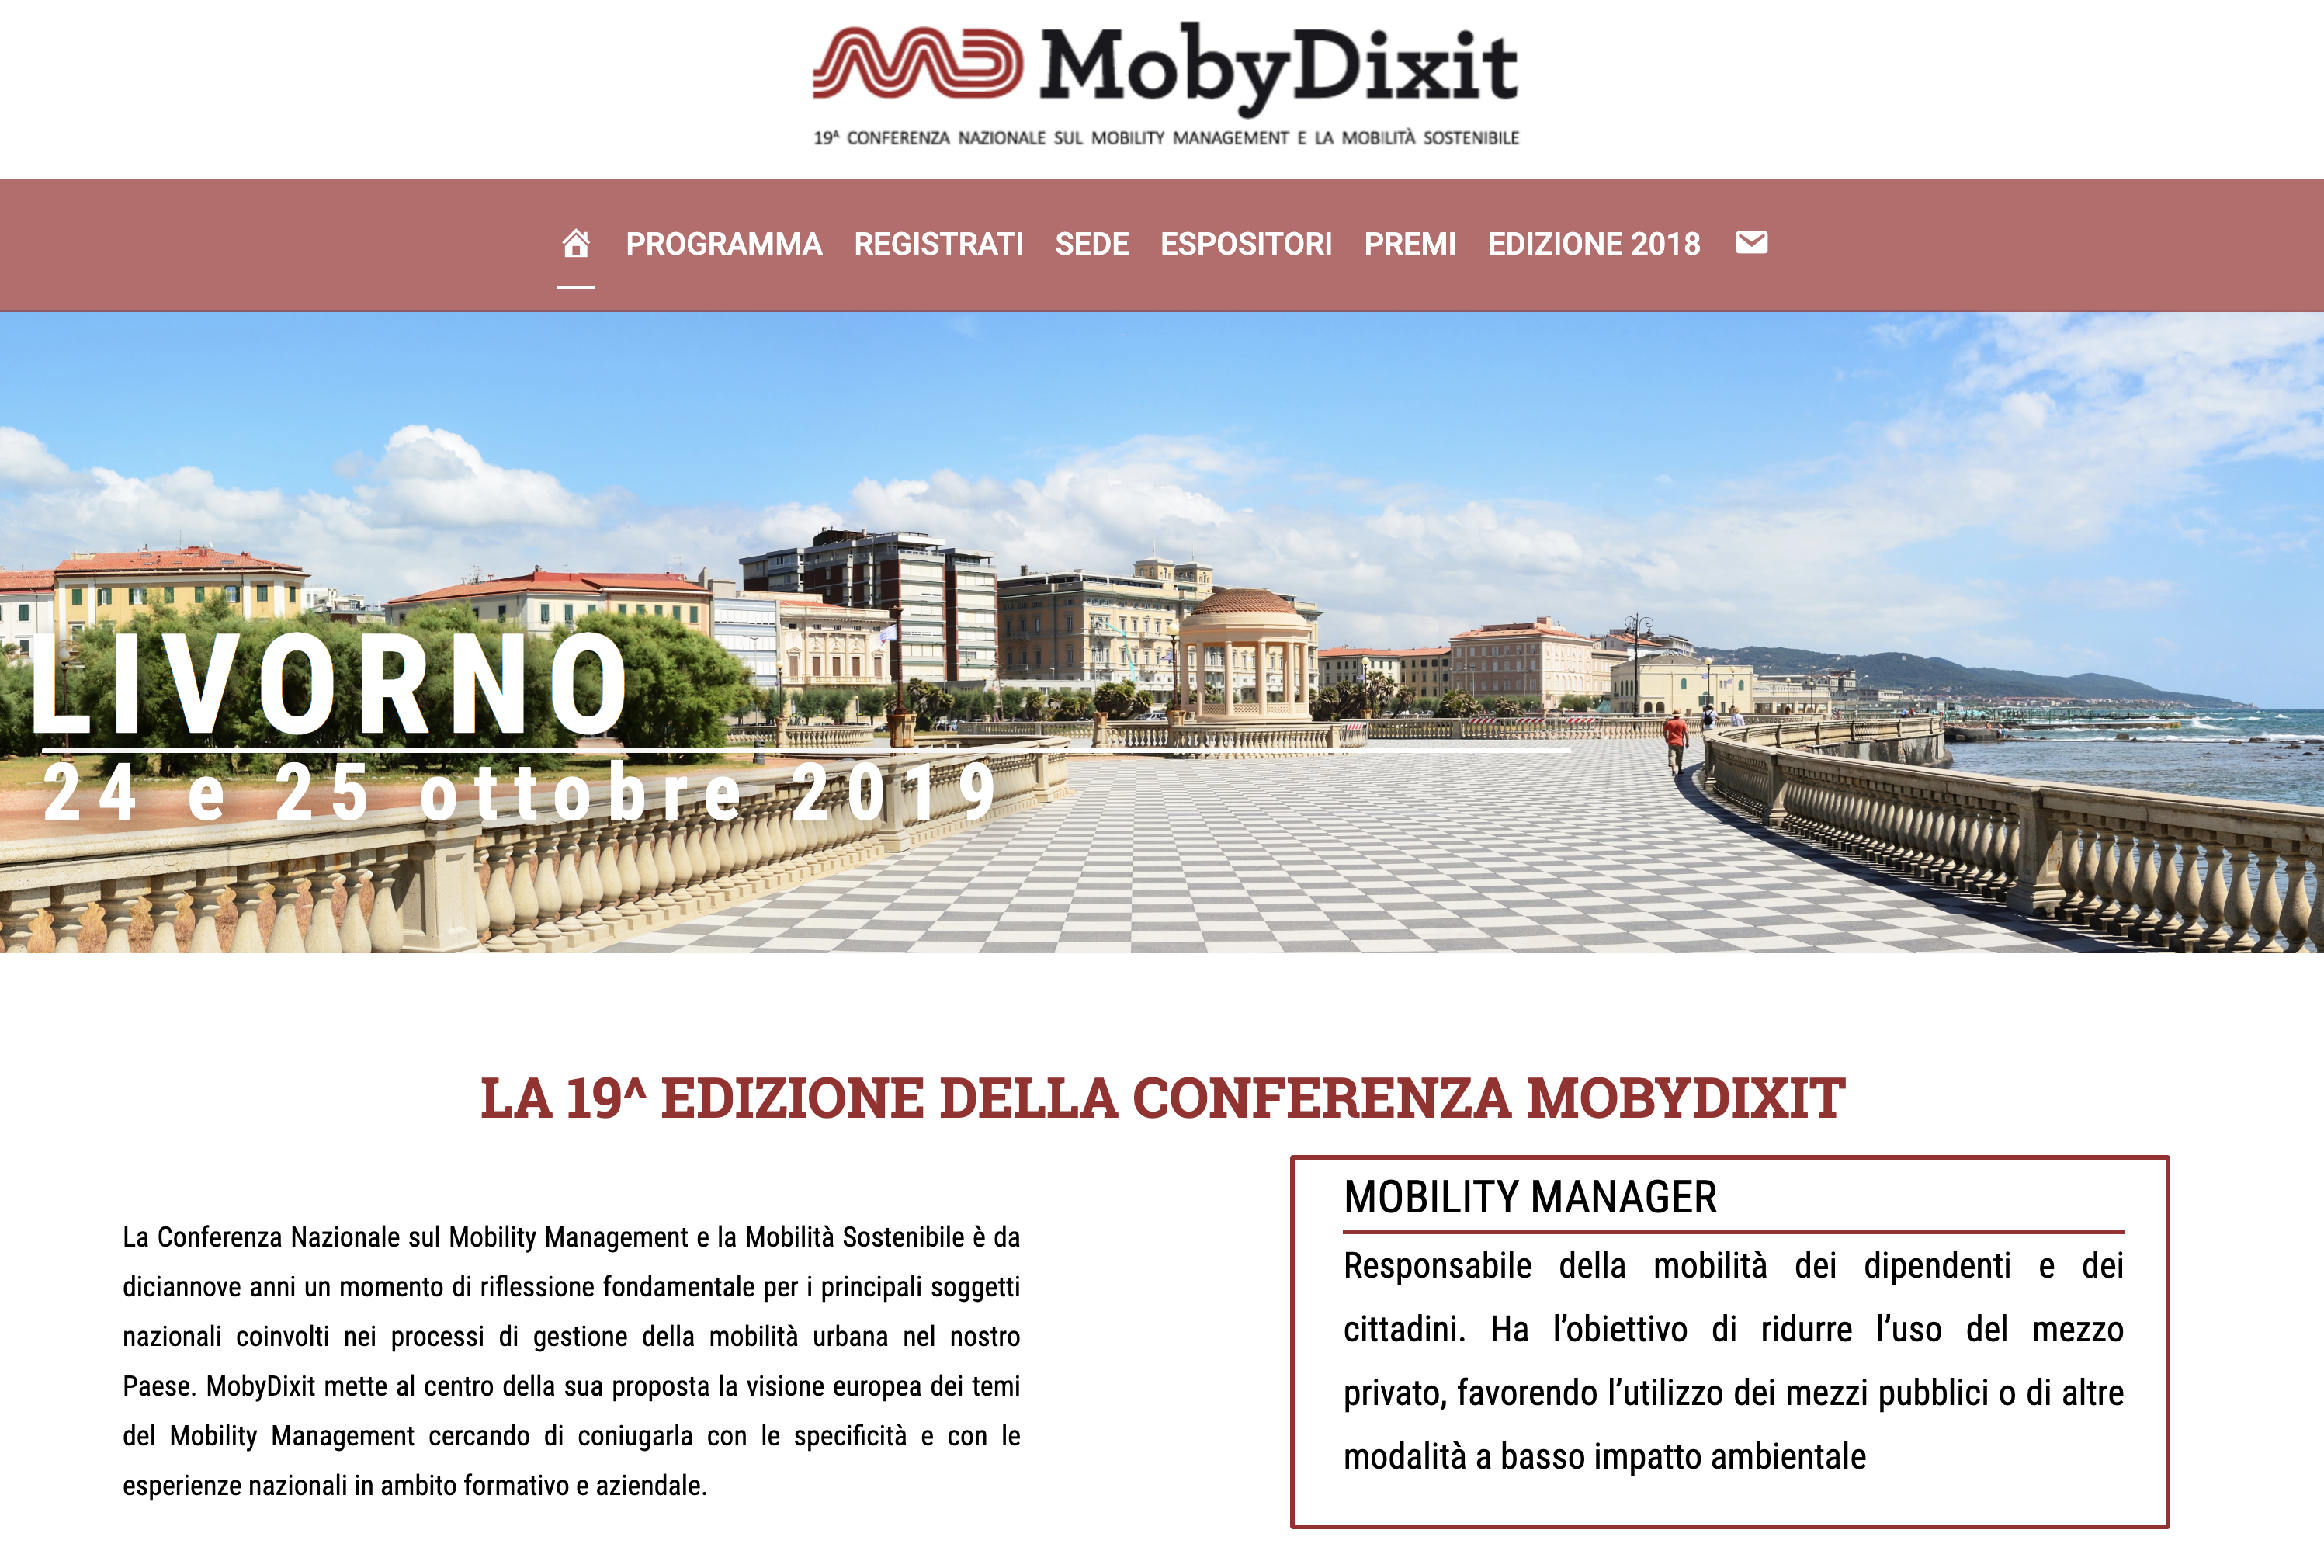 TTE a MobyDixit – 19° Conferenza Nazionale sul Mobility Management e la Mobilità Sostenibile